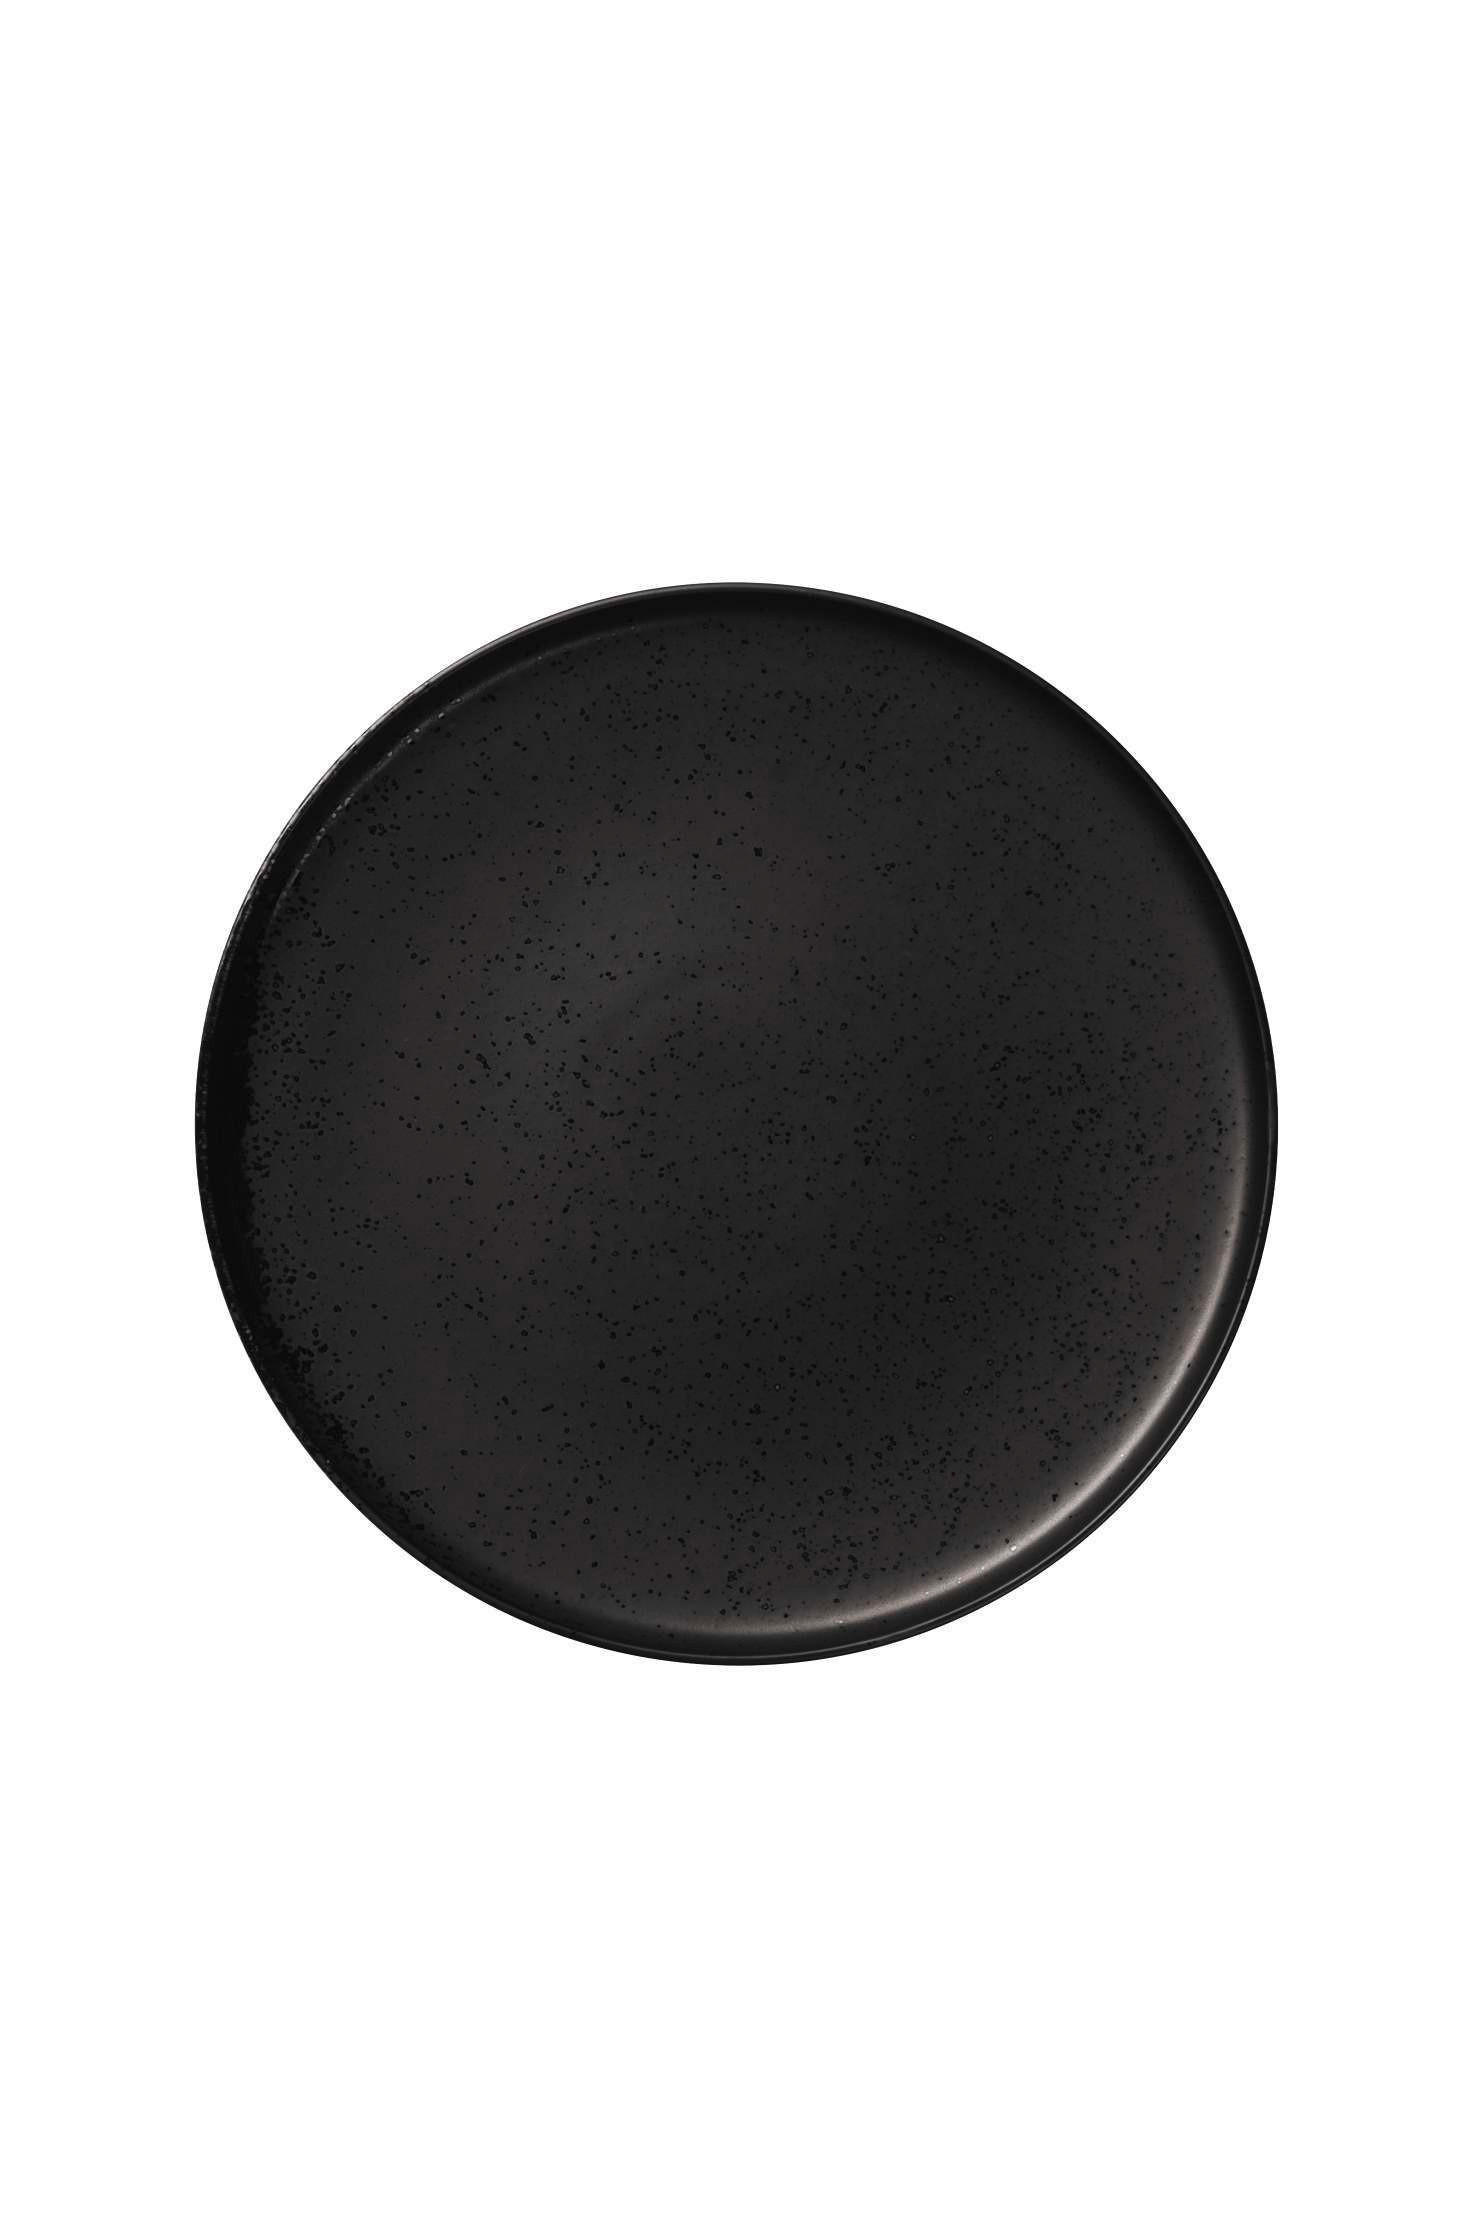 Porzellan  DESSERTTELLER  rund  - Schwarz, Design, Keramik (21/1,5cm) - ASA